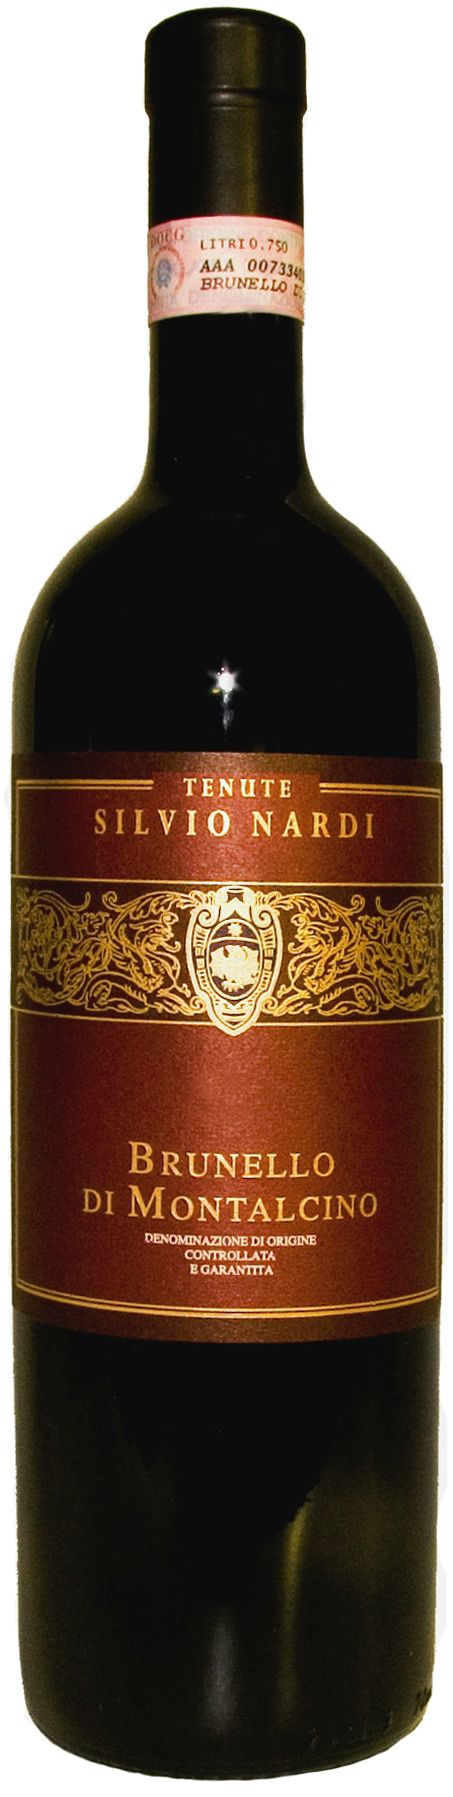 Tenute Silvio Nardi, Brunello Di Montalcino, 1997